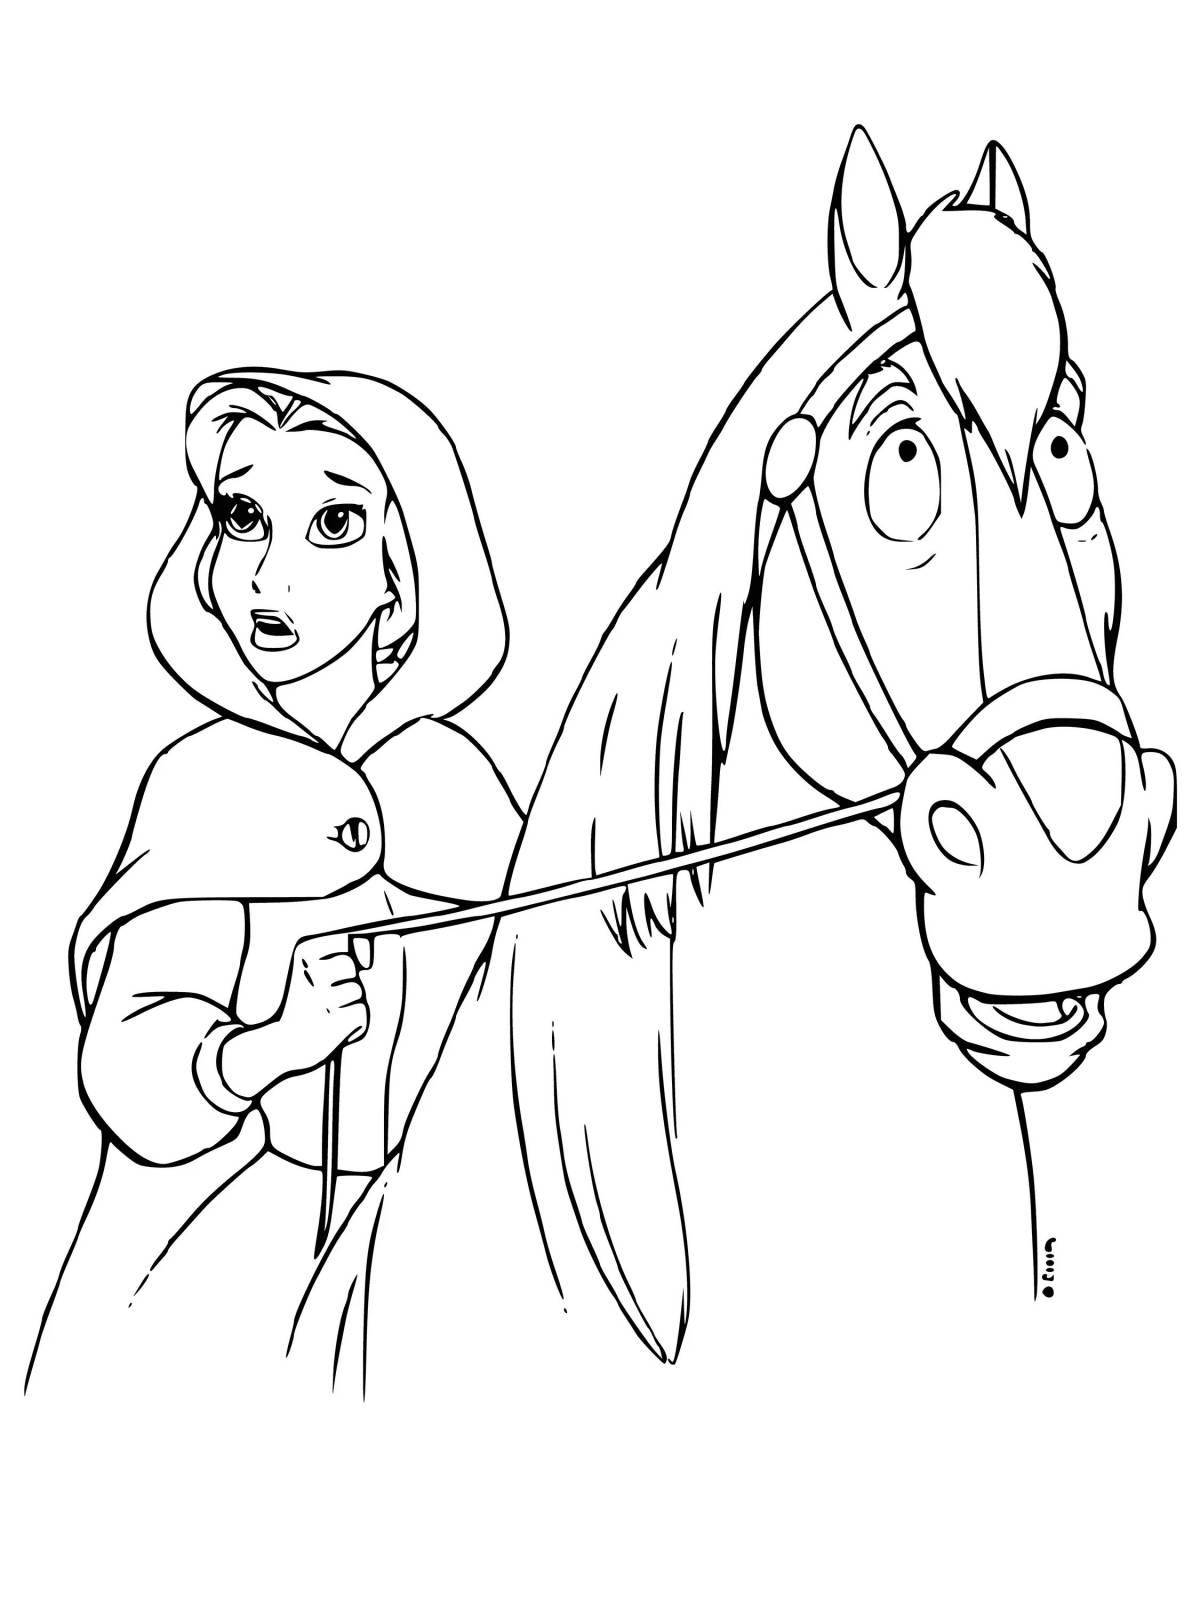 Joyful coloring horse and princess